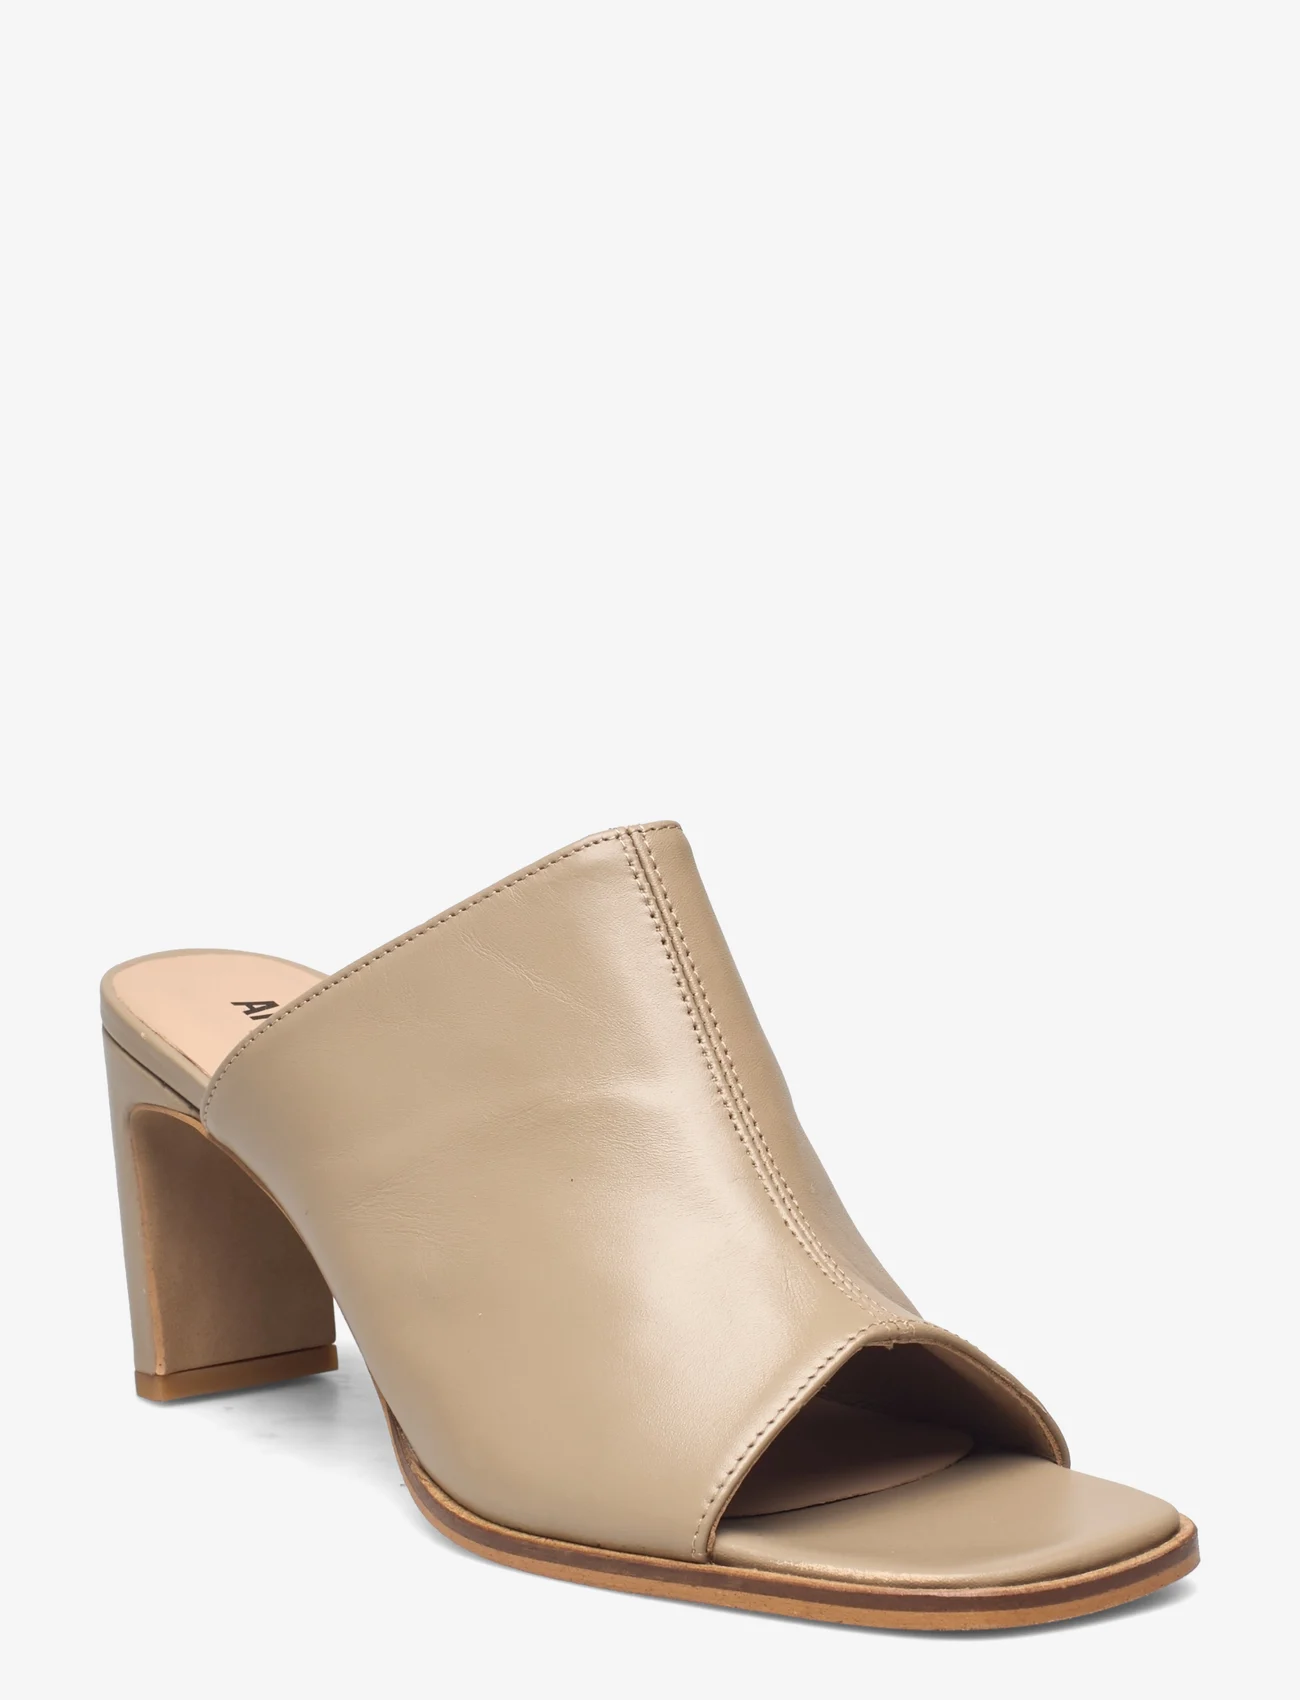 ANGULUS - Sandals - Block heels - basutės su kulnu - 1571 beige - 0